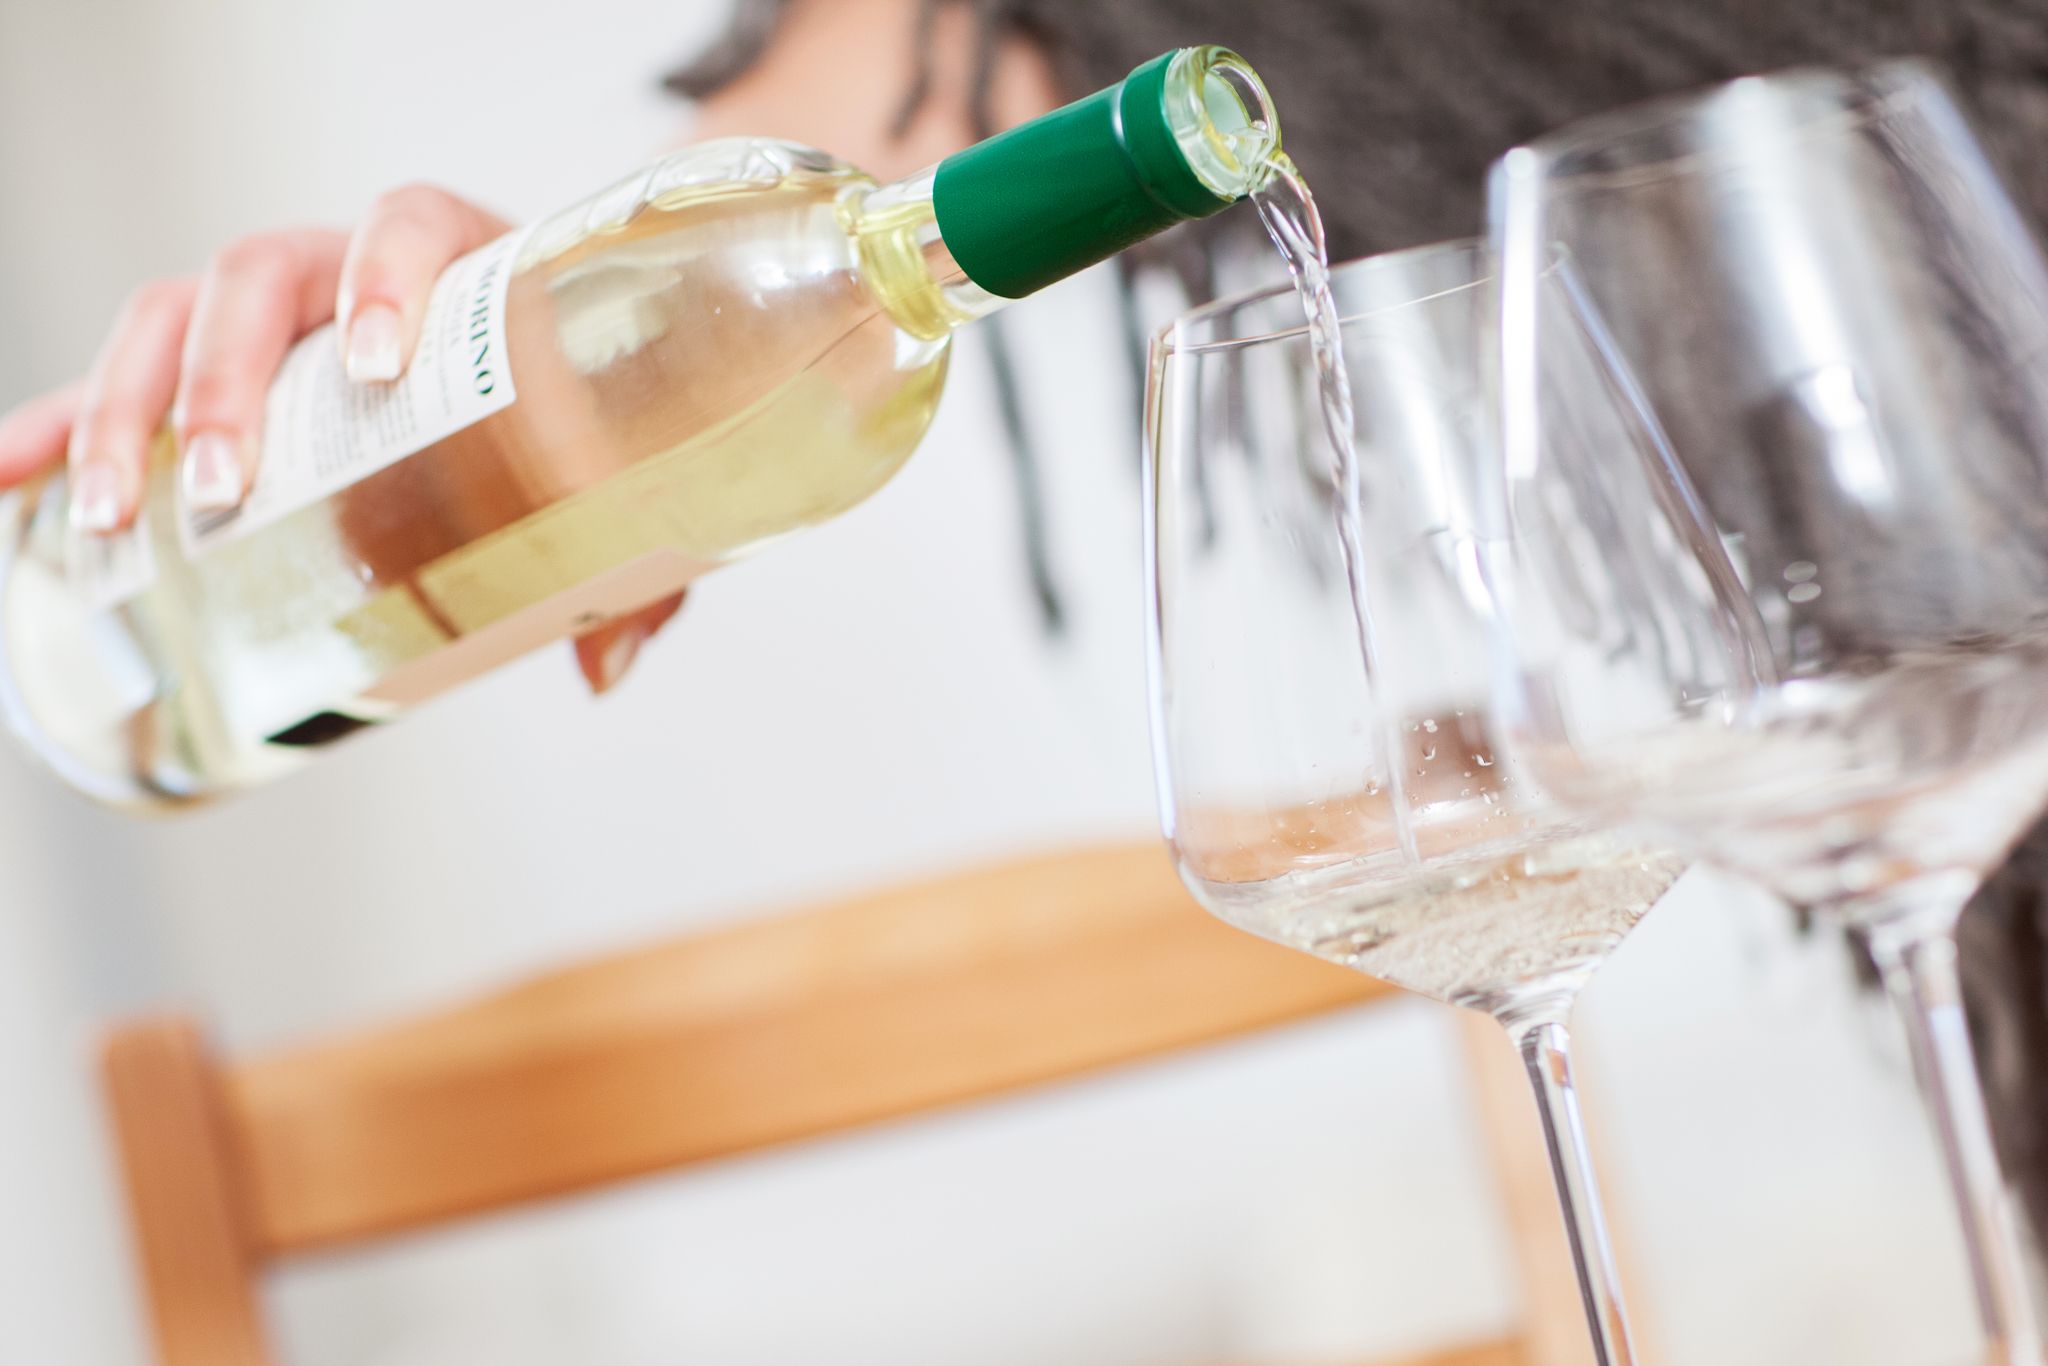 Un ensayo buscará determinar si es verdad que beber alcohol con moderación es saludable para mayores de 50 años